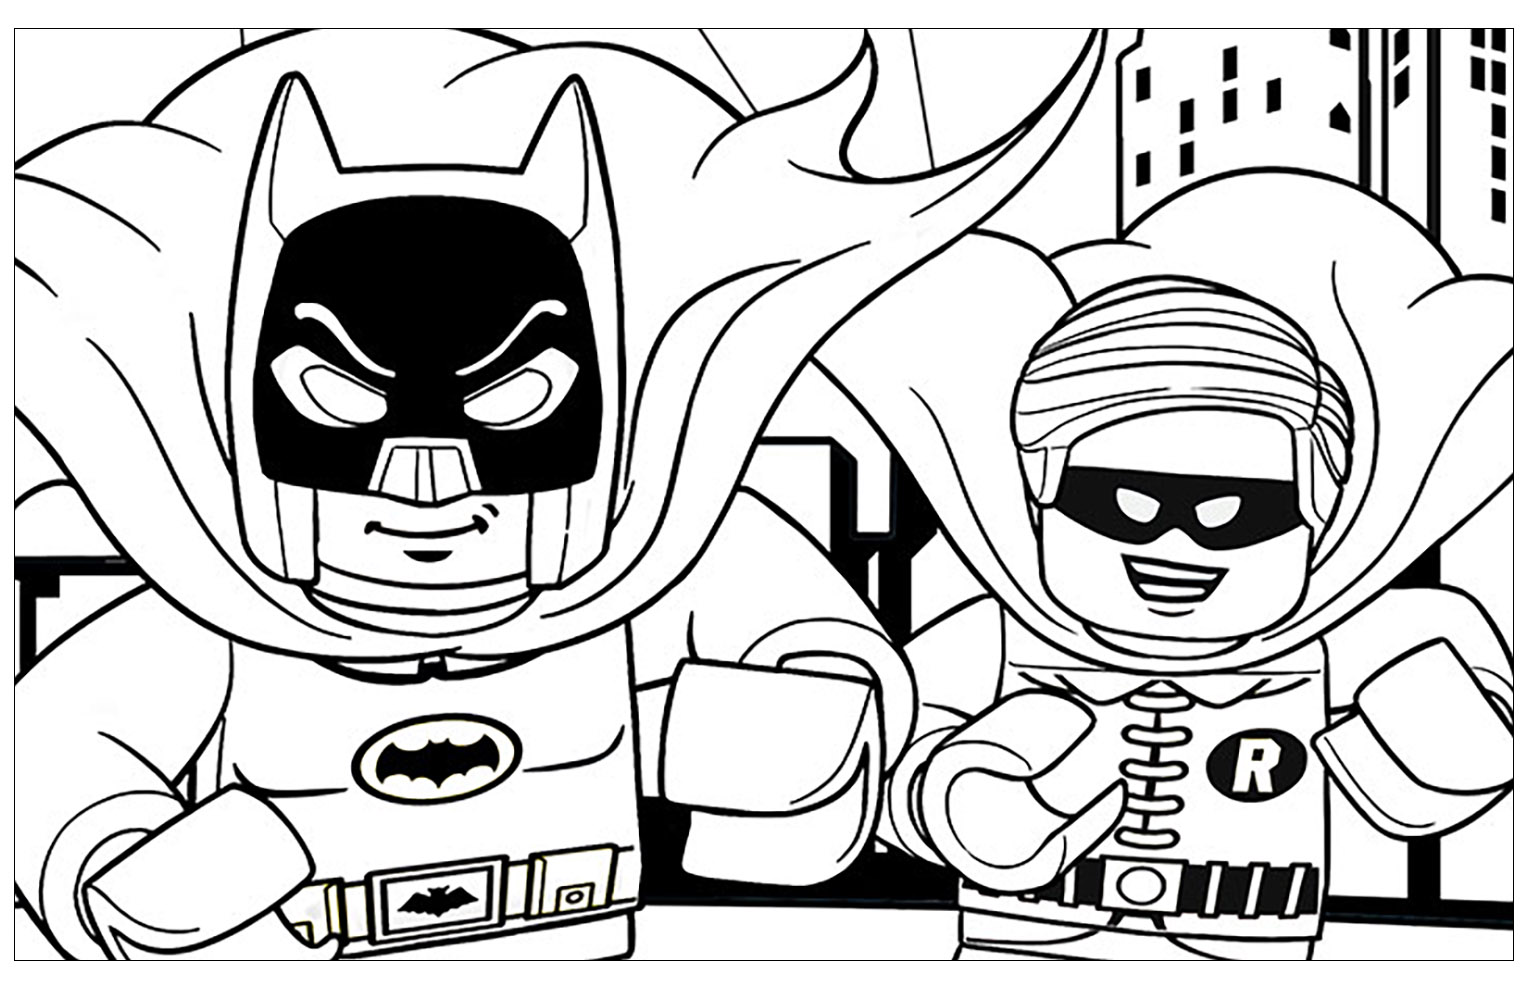 Dibujo de Lego Batman para imprimir y colorear - Lego Batman - Just Color  Niños : Dibujos para colorear para niños